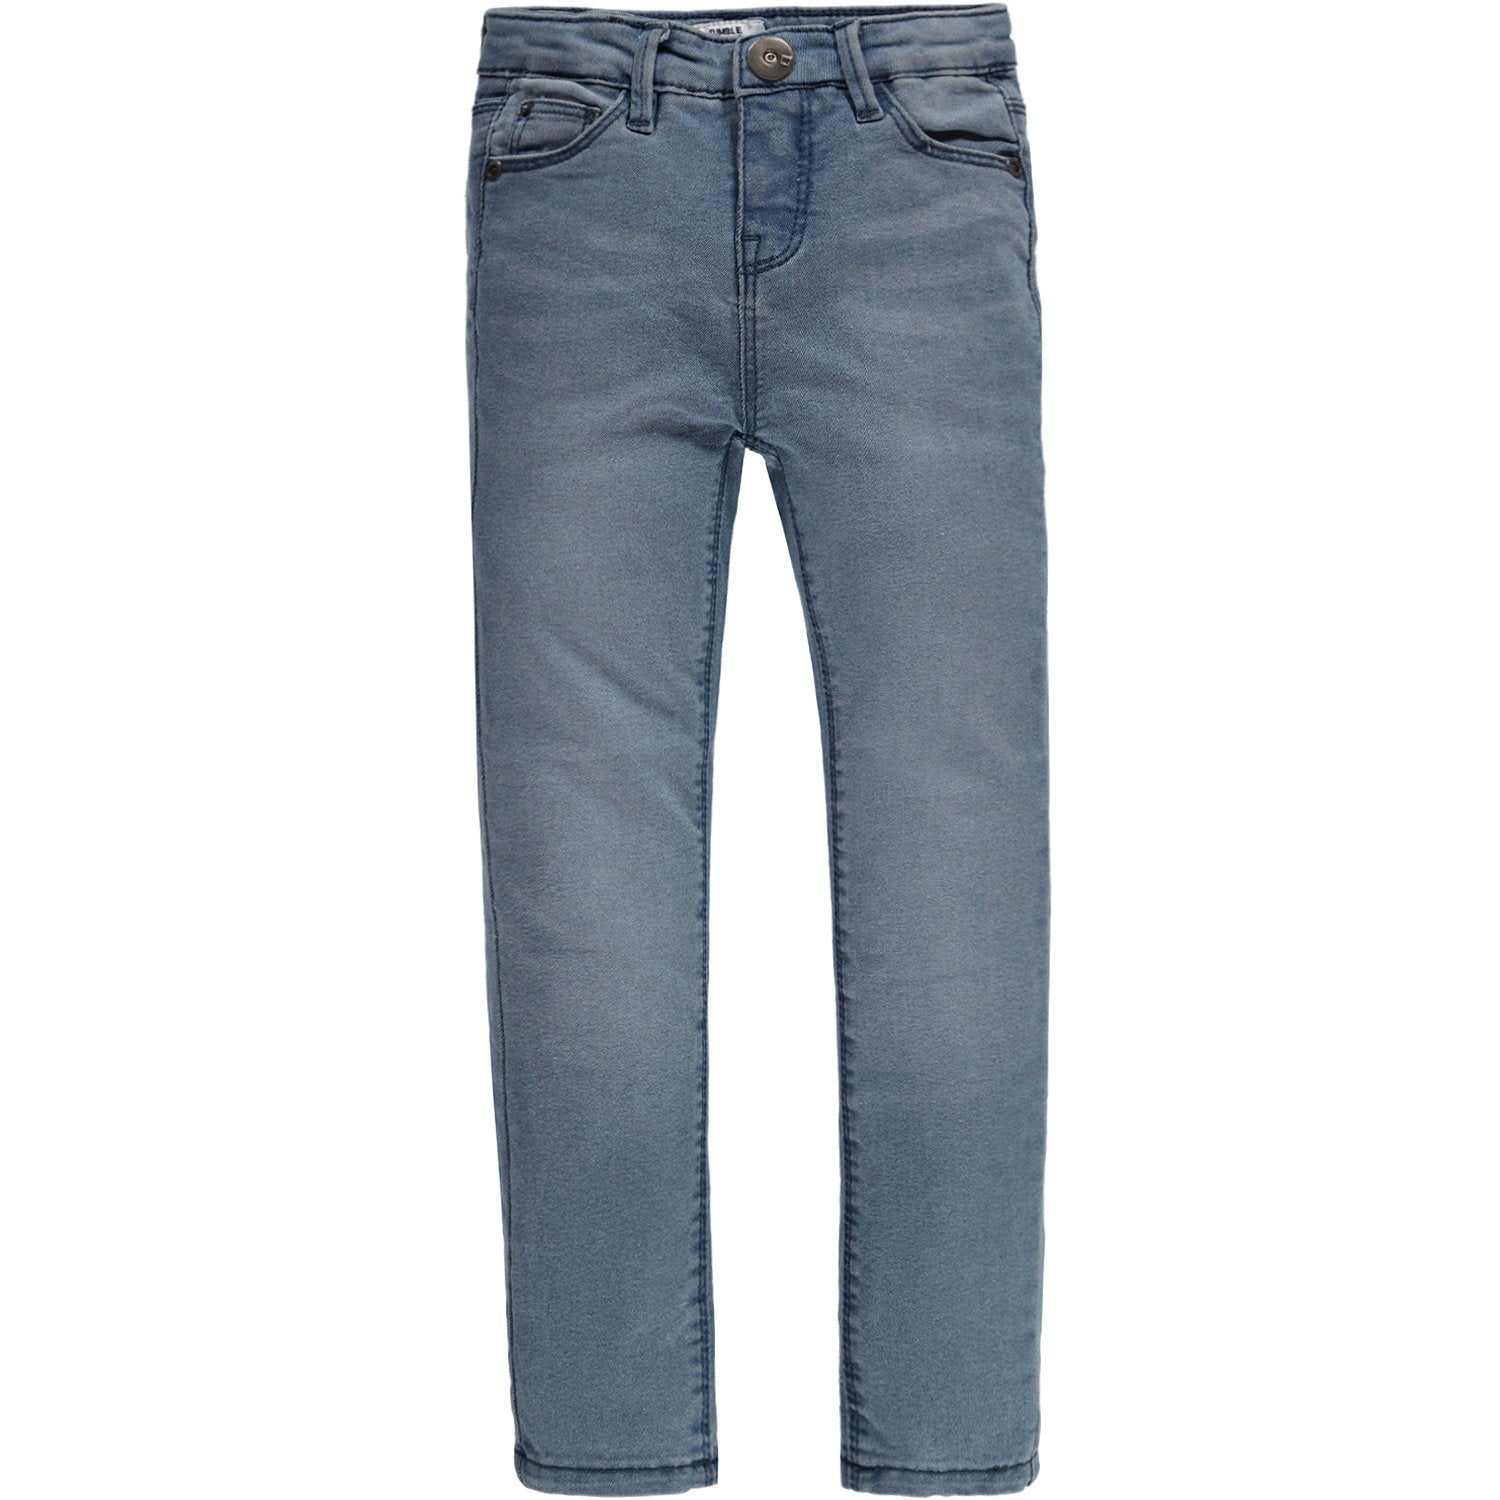 Meisjes Broek Jeans lang van Tumble 'n Dry in de kleur Denim mid blue in maat 140.